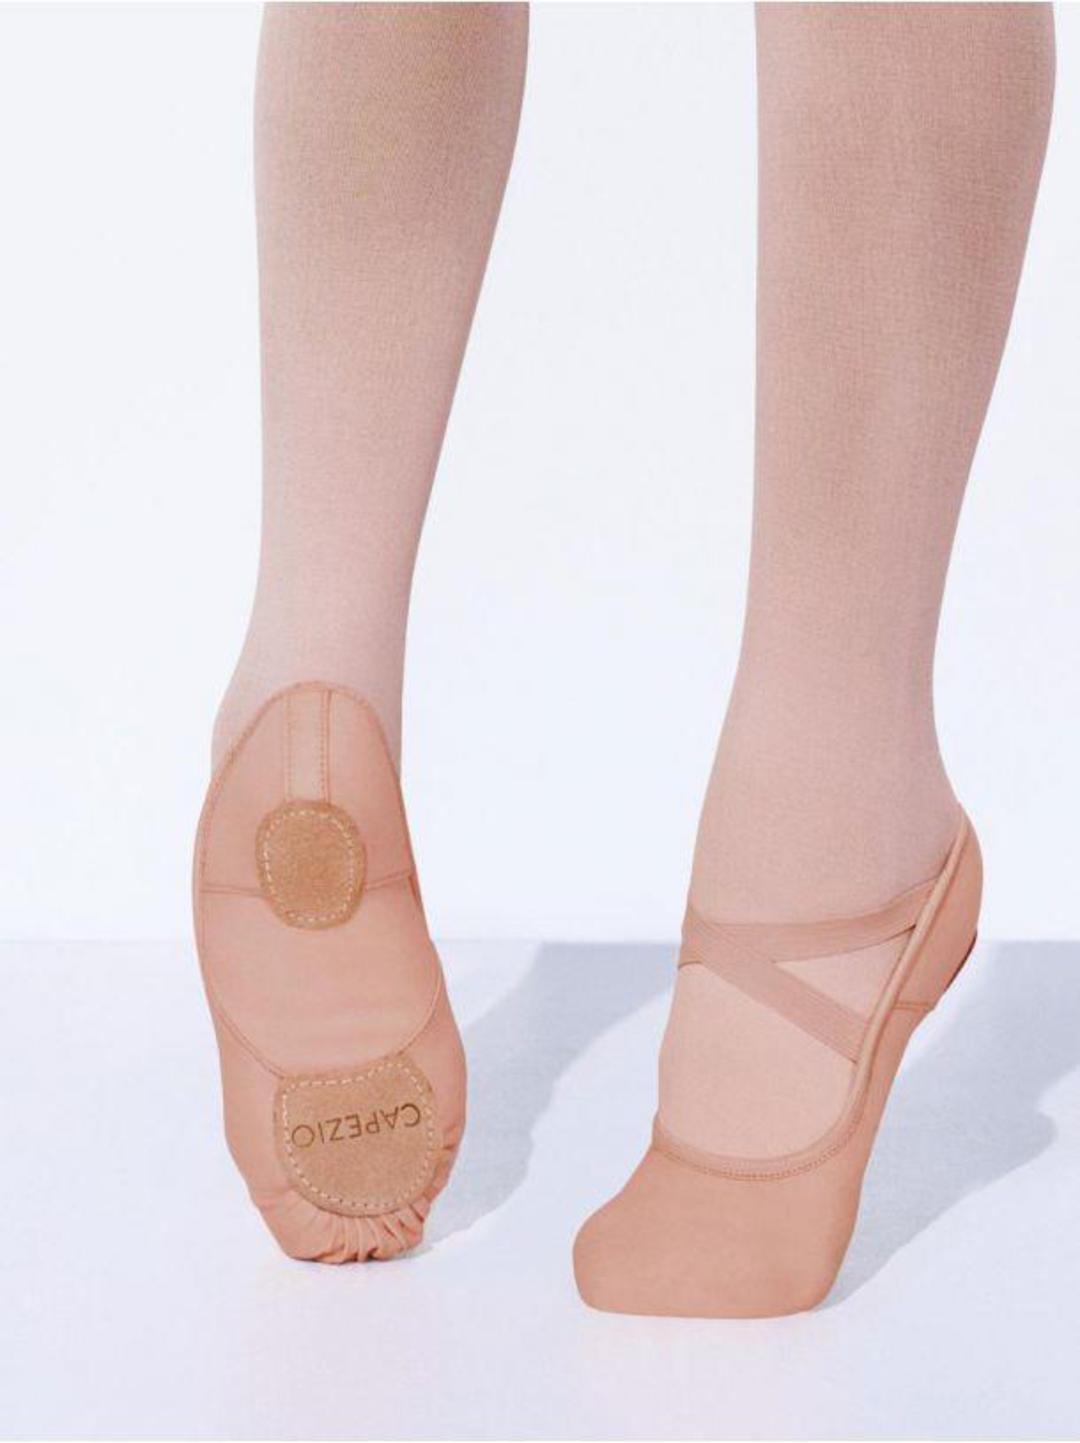 praise dance shoes